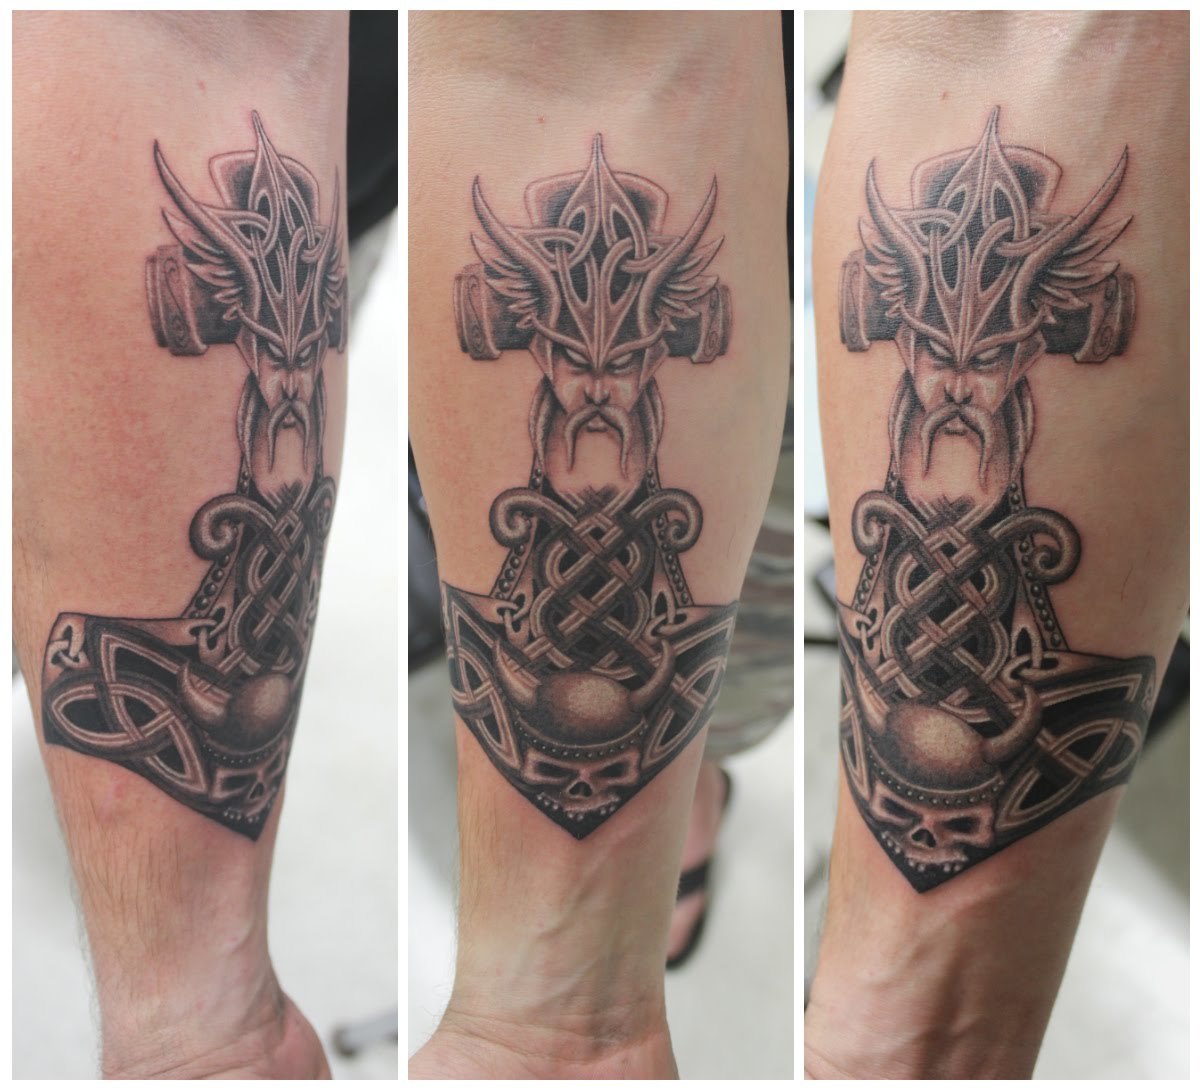 Nordic Tattoo met Odin en de Thoshammer